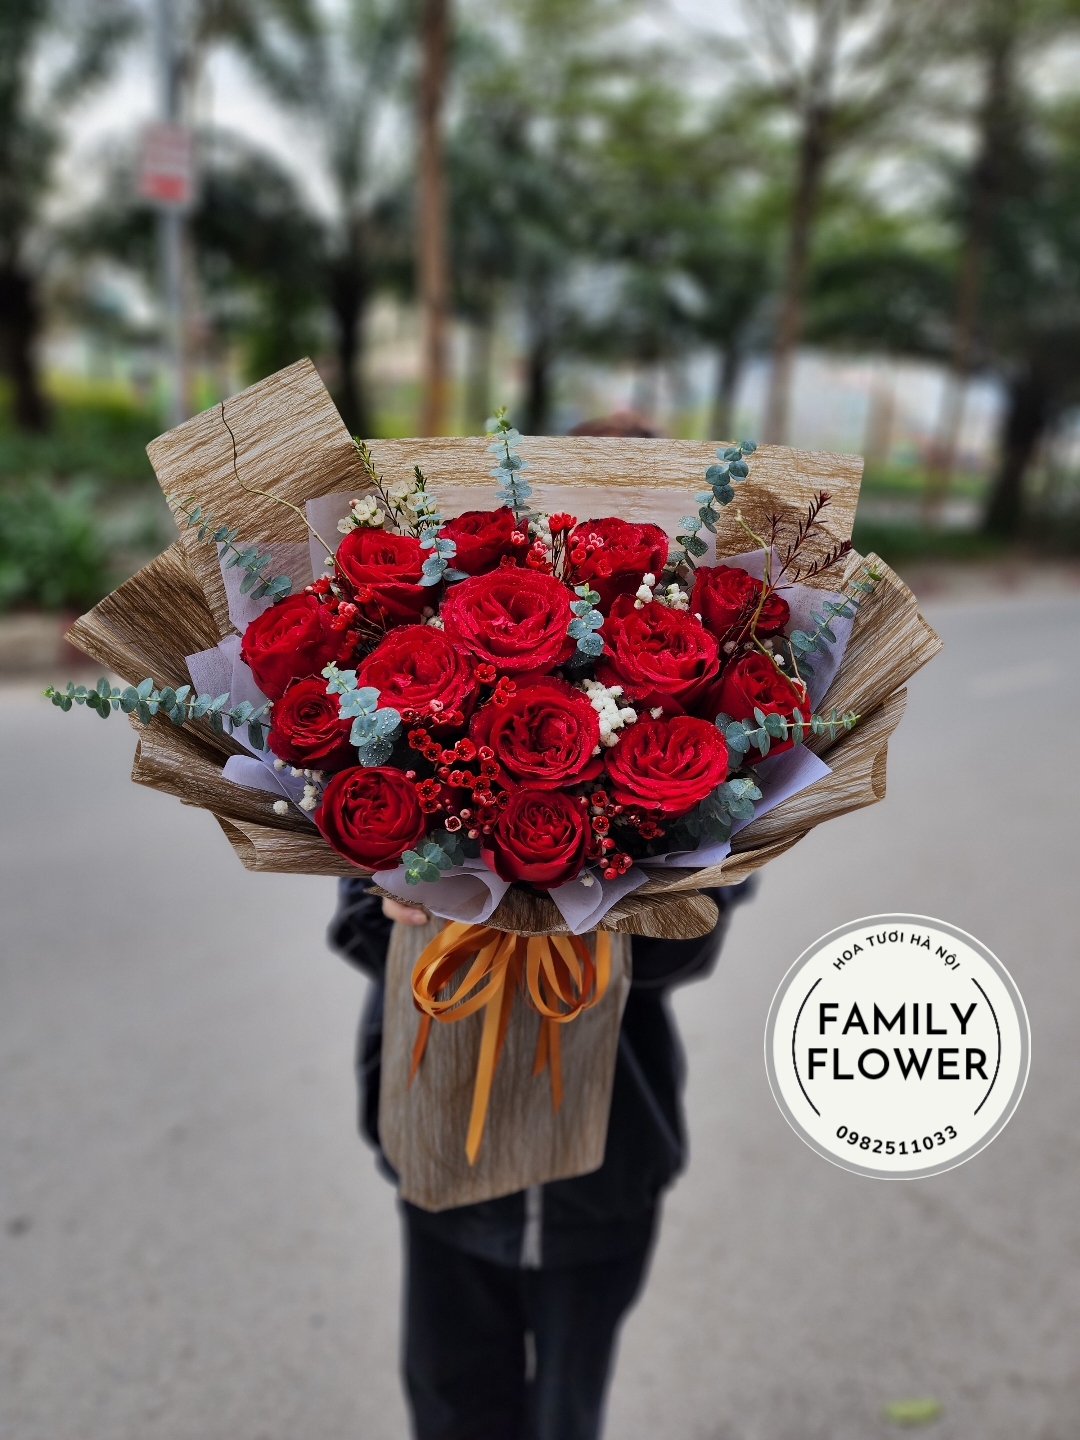 Hoa hồng đỏ tặng bạn gái, tặng vợ nhân dịp đặc biệt 😘😘😘